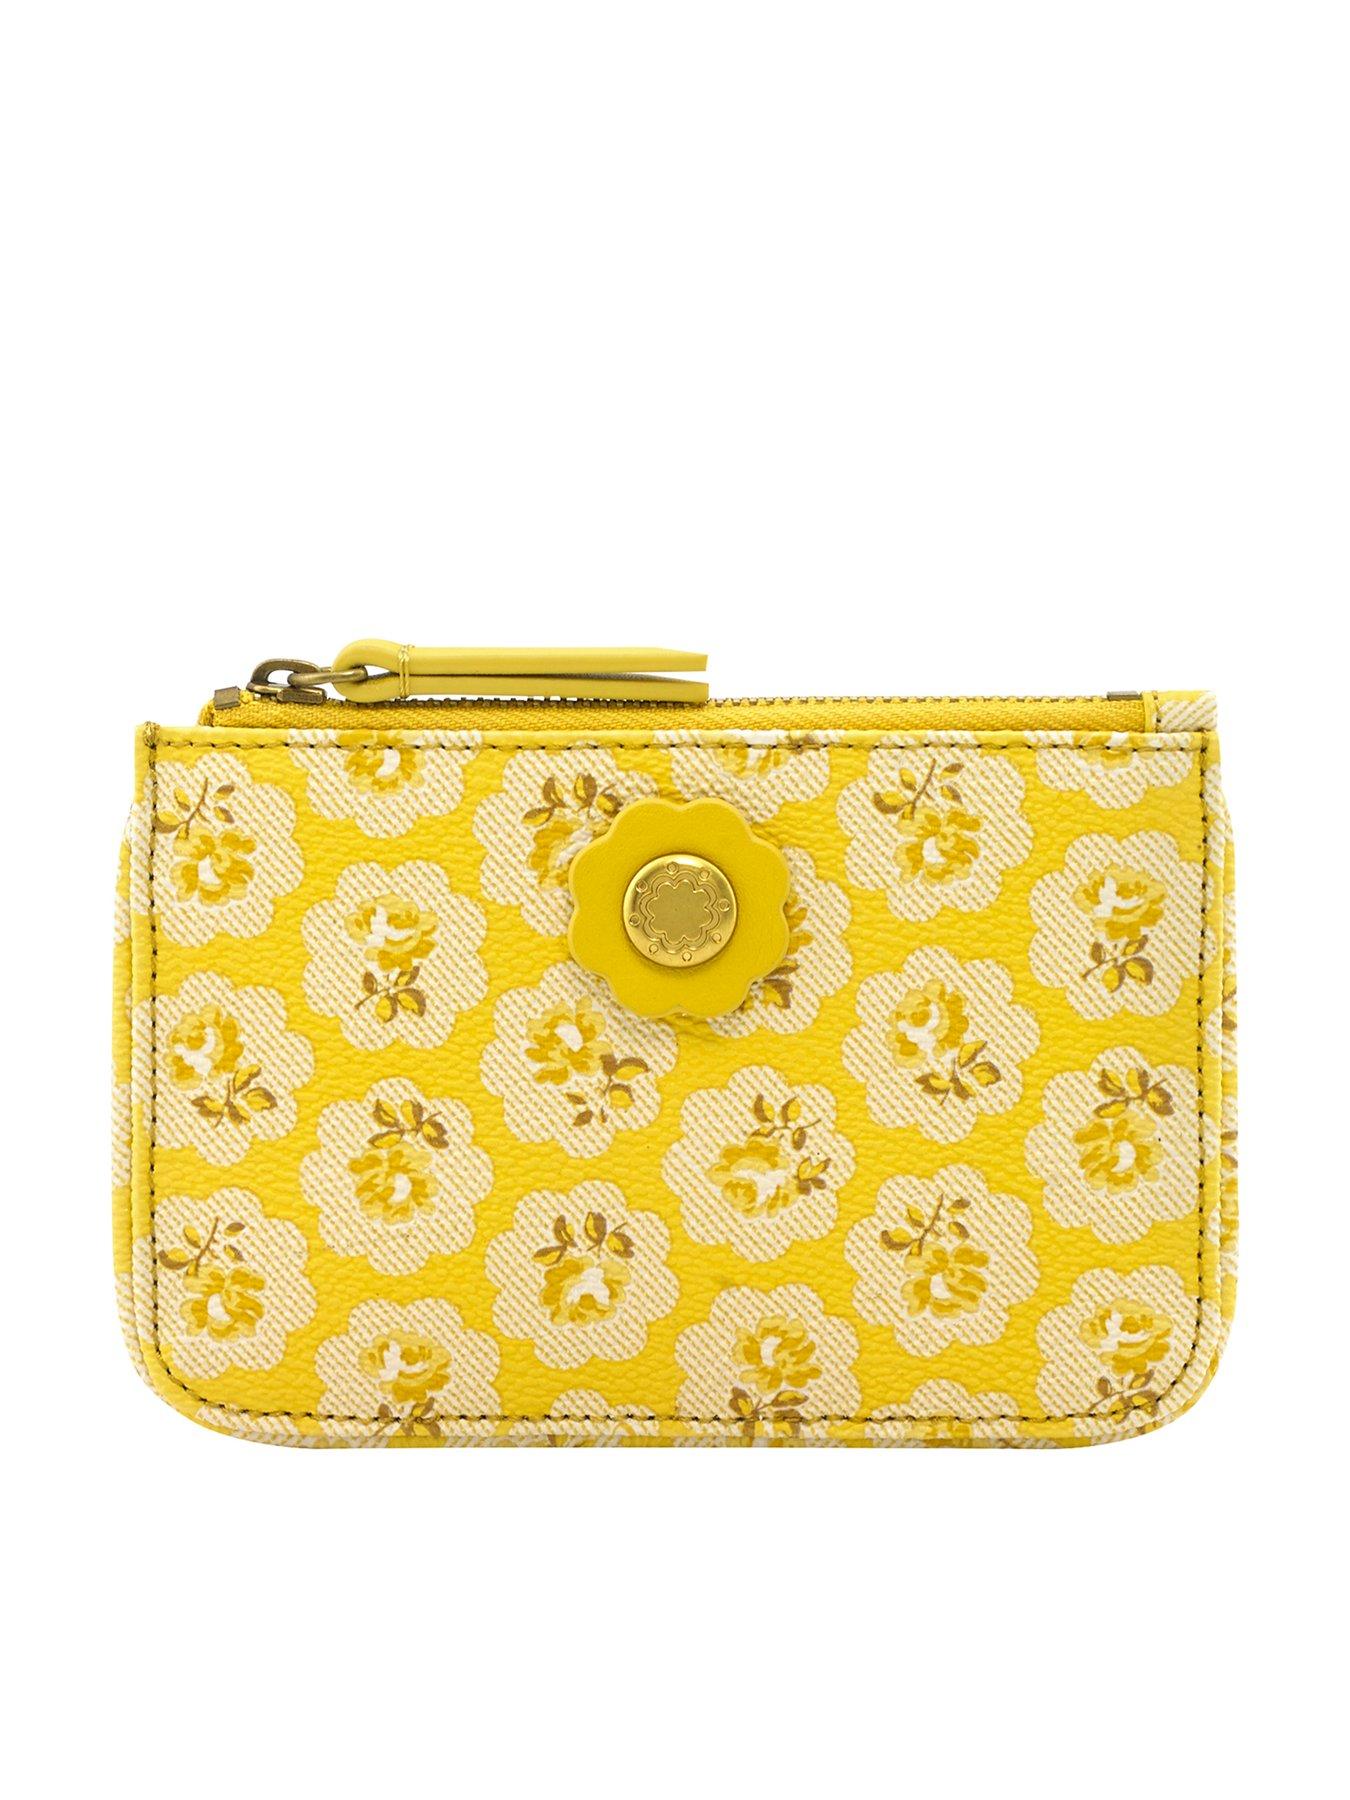 cath kidston yellow purse